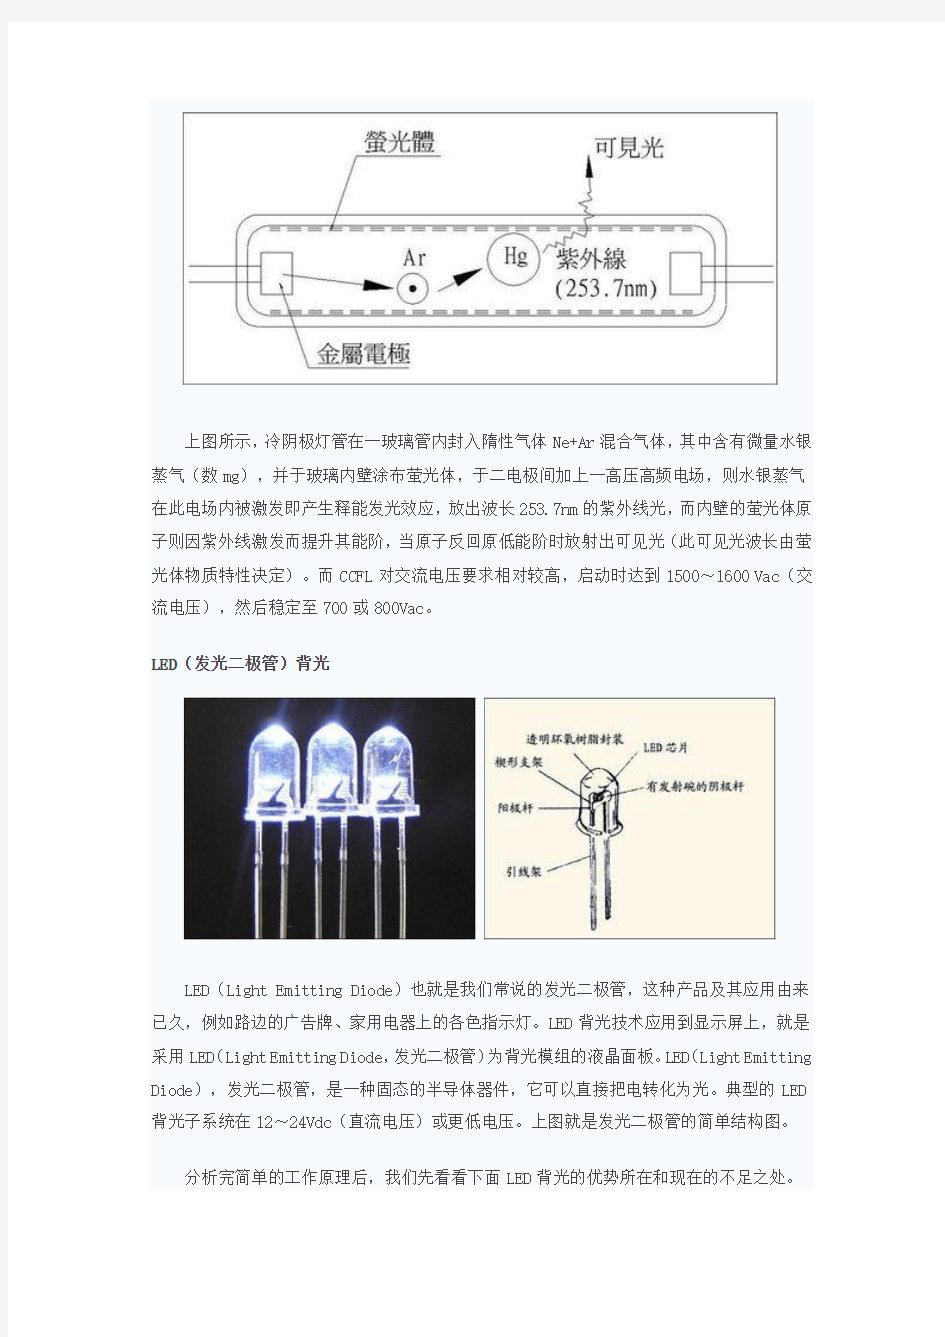 液晶- LED背光-等离子显示技术